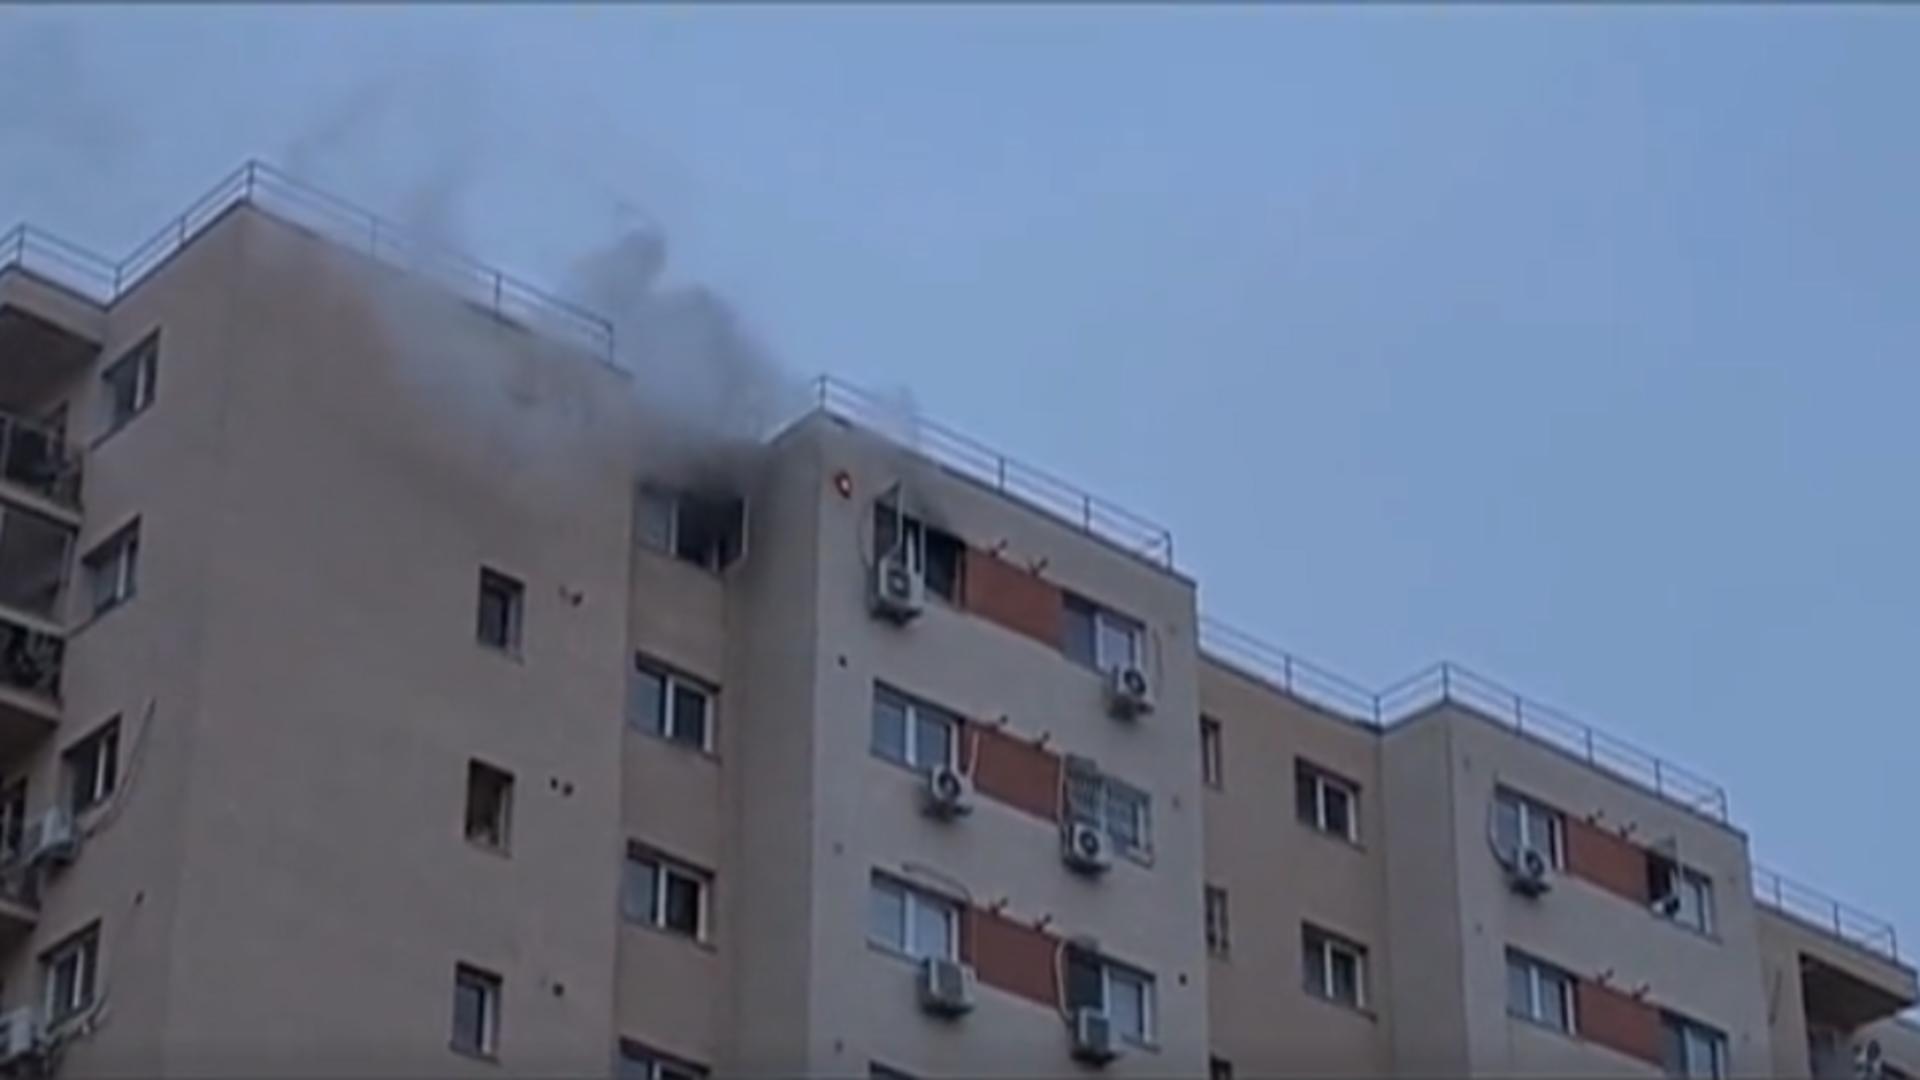 Apartament în flăcări, în Capitală / Captură video